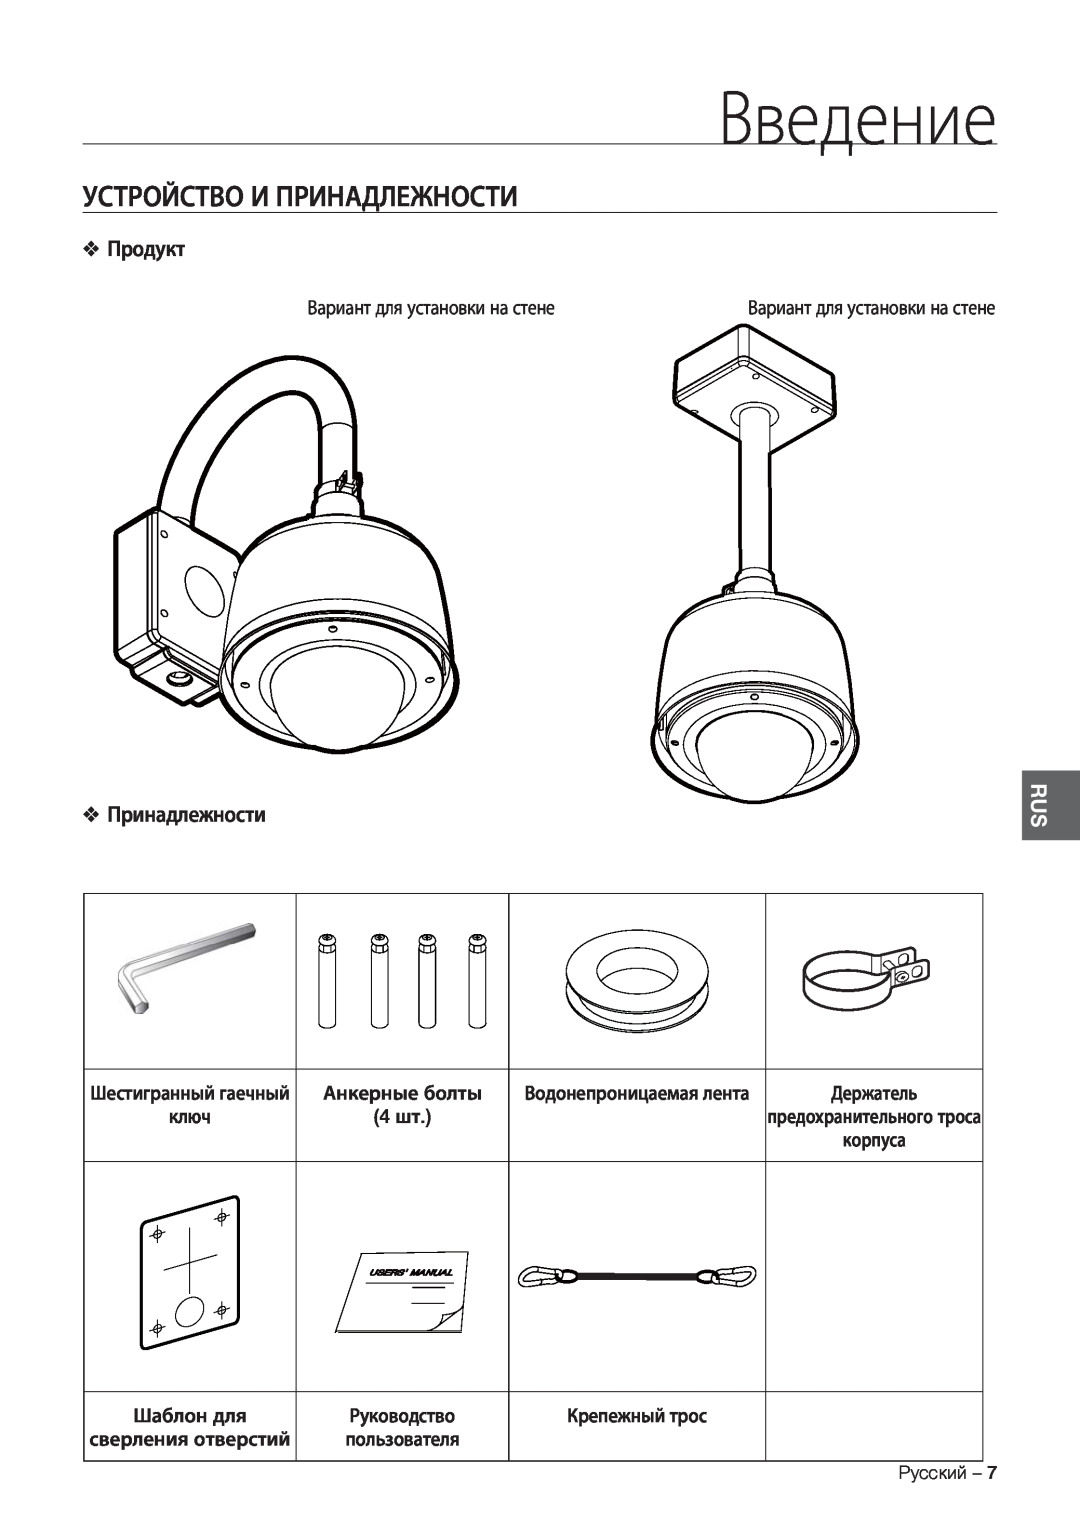 Samsung SCC-C7478P manual Устройство И Принадлежности, Продукт, Введение 